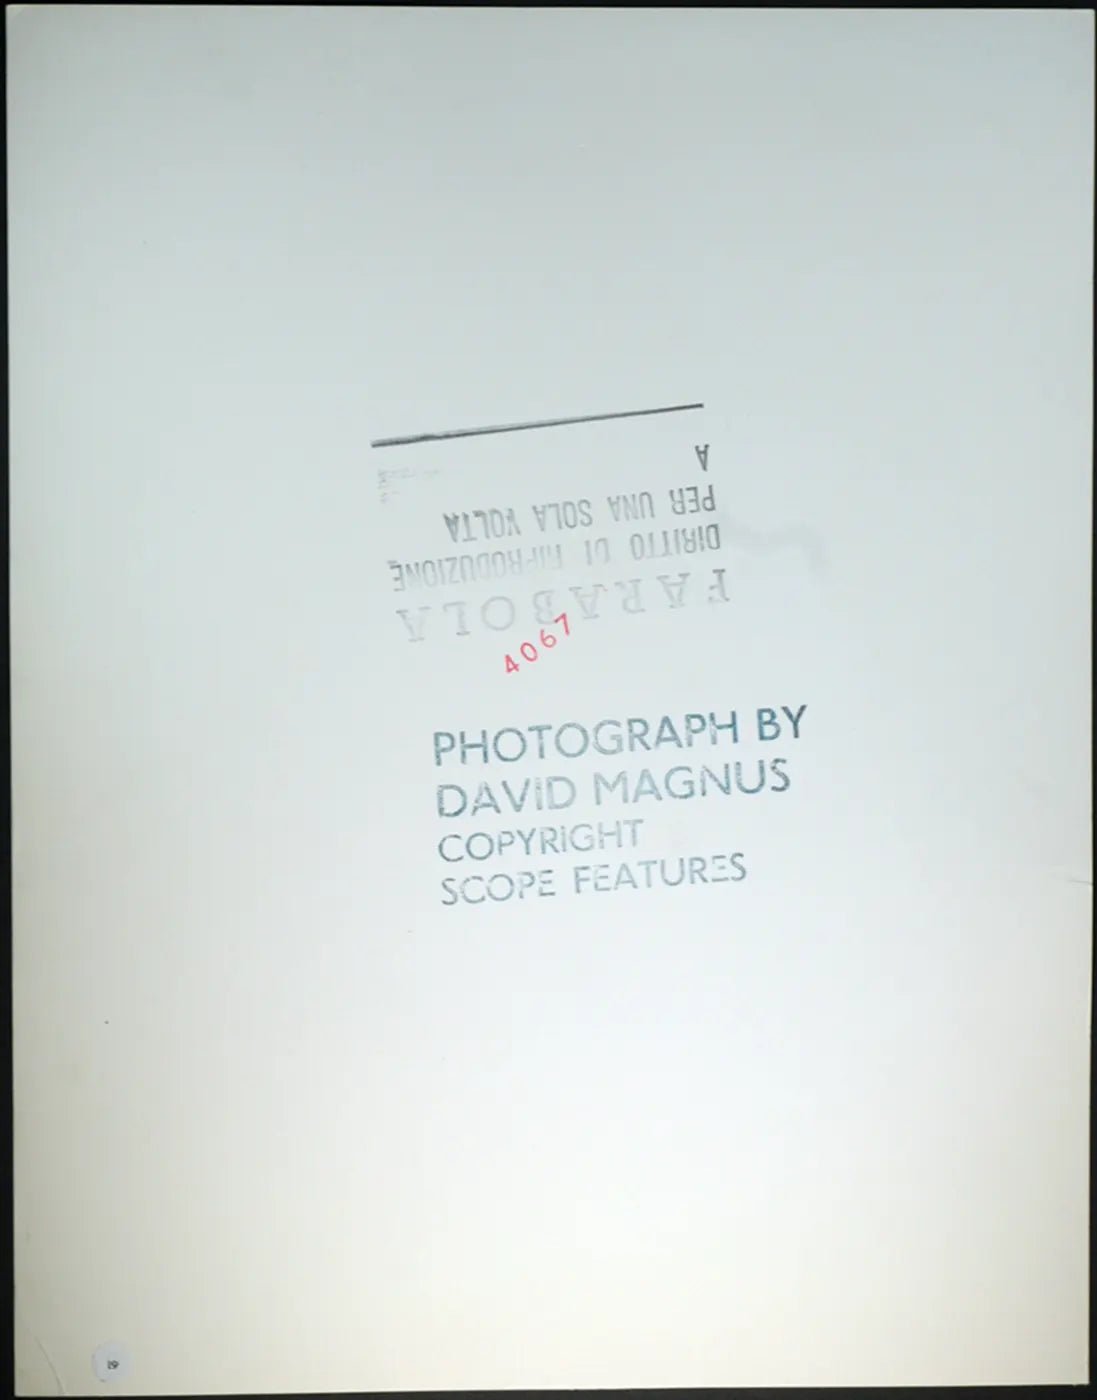 Musica Rod Stewart Ft 61 - Stampa 26x33 cm - Farabola Stampa ai sali d'argento